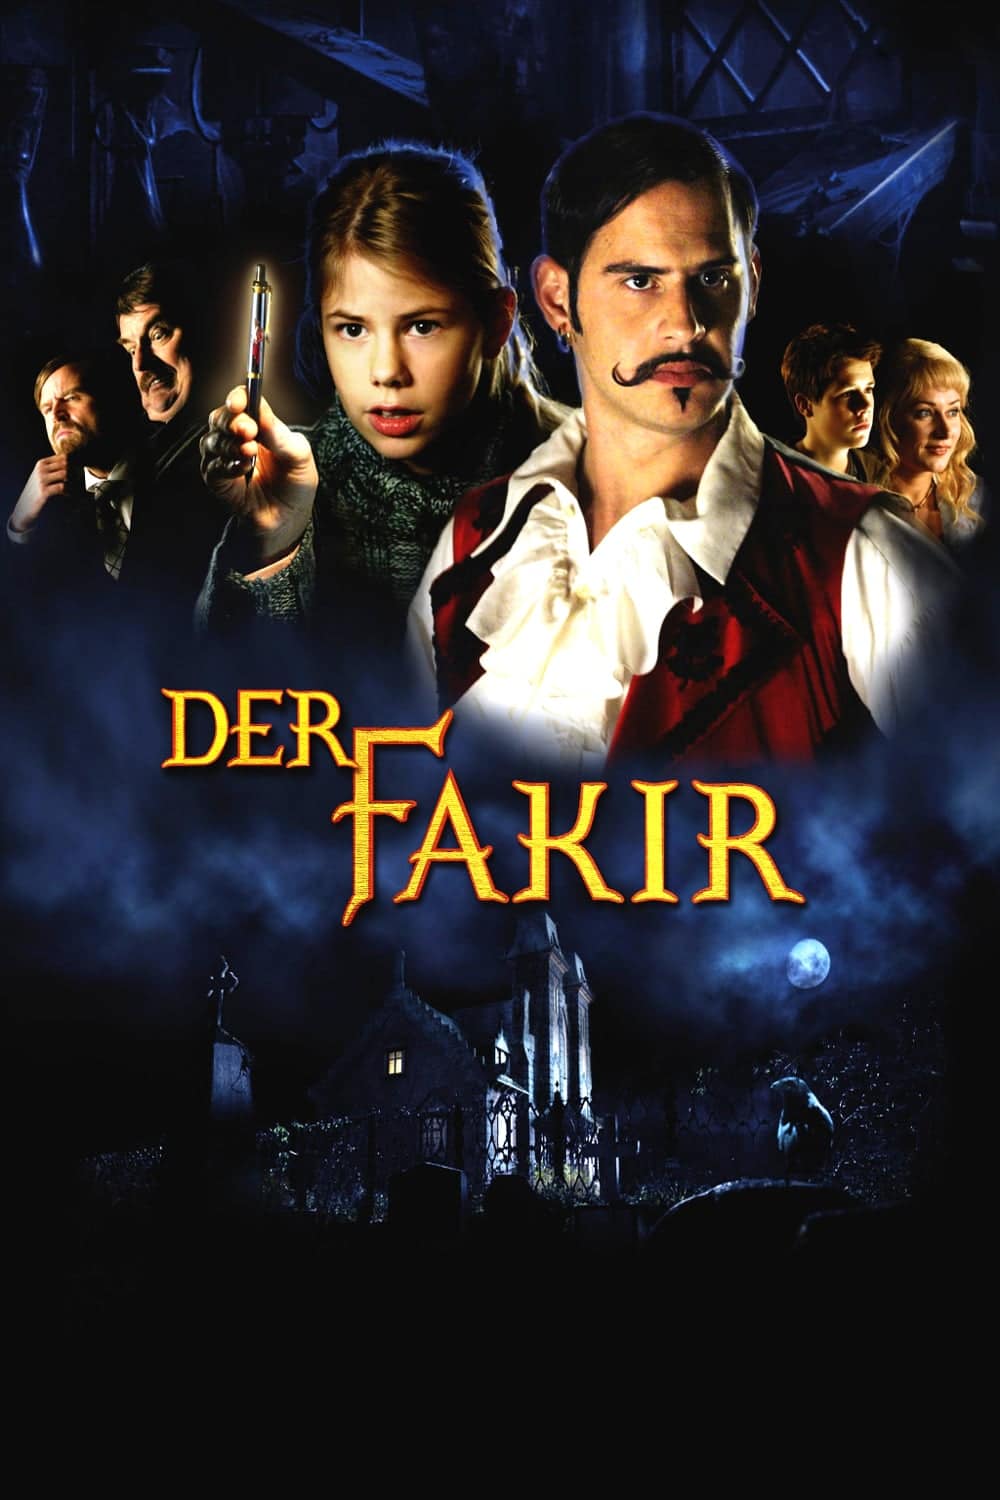 Plakat von "Der Fakir"